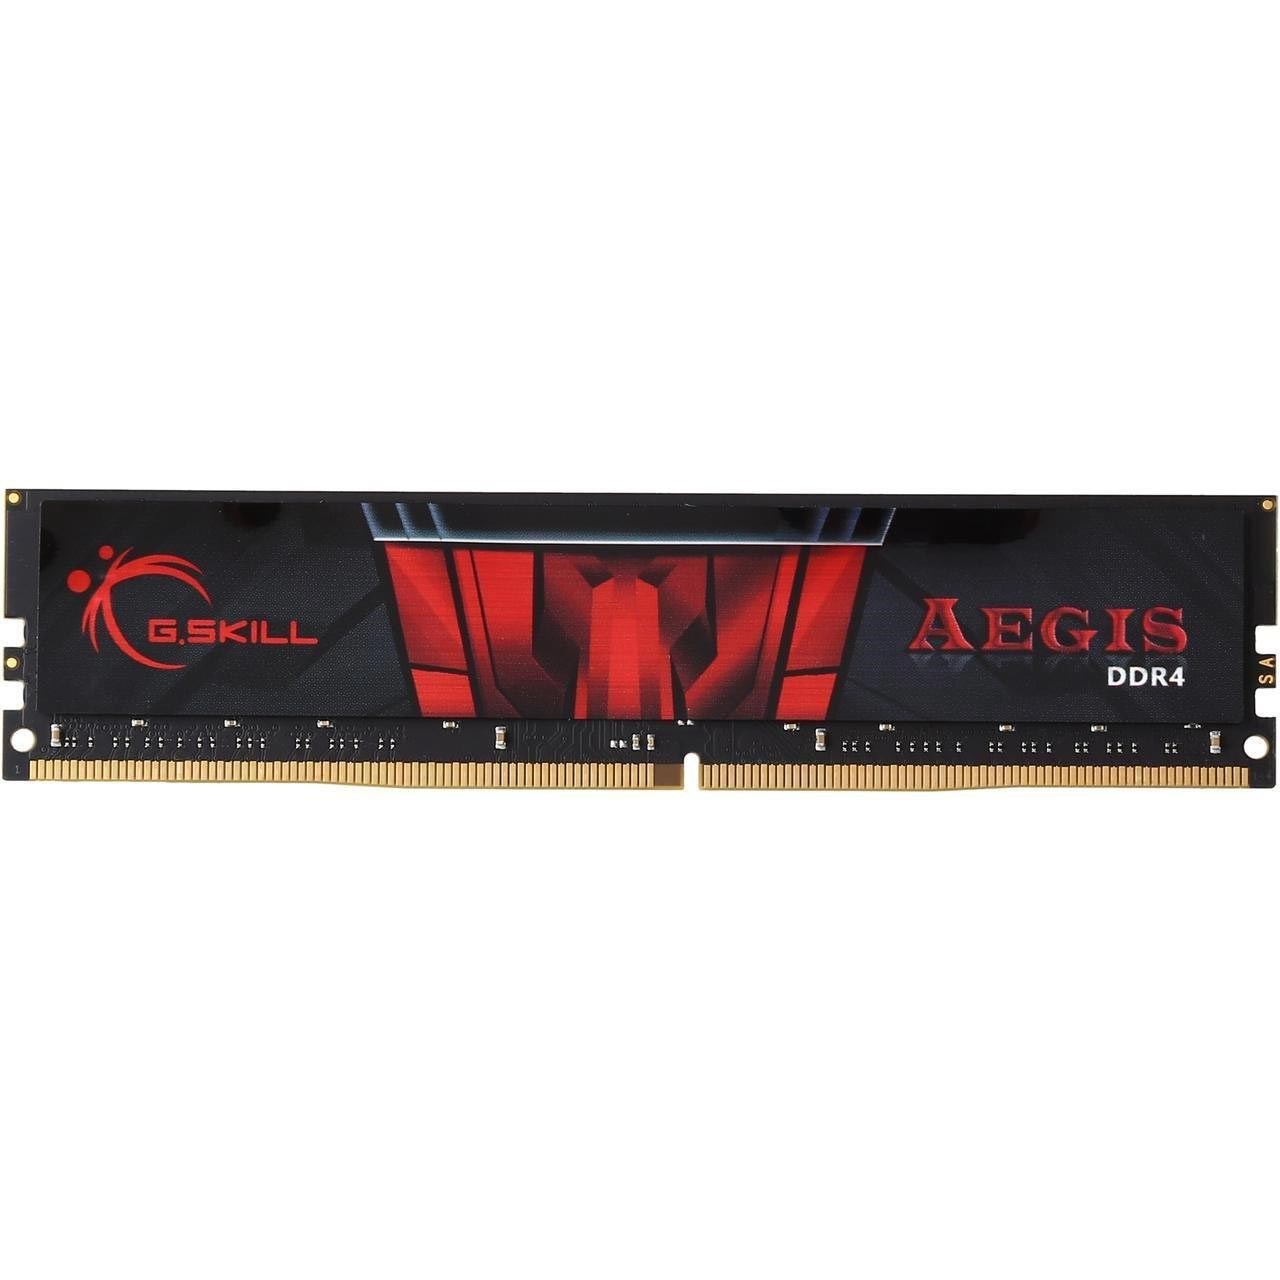 رم دسکتاپ DDR4 دو کاناله 2400 مگاهرتز CL15 جی اسکیل سری Aegi ظرفیت 16 گیگابایت